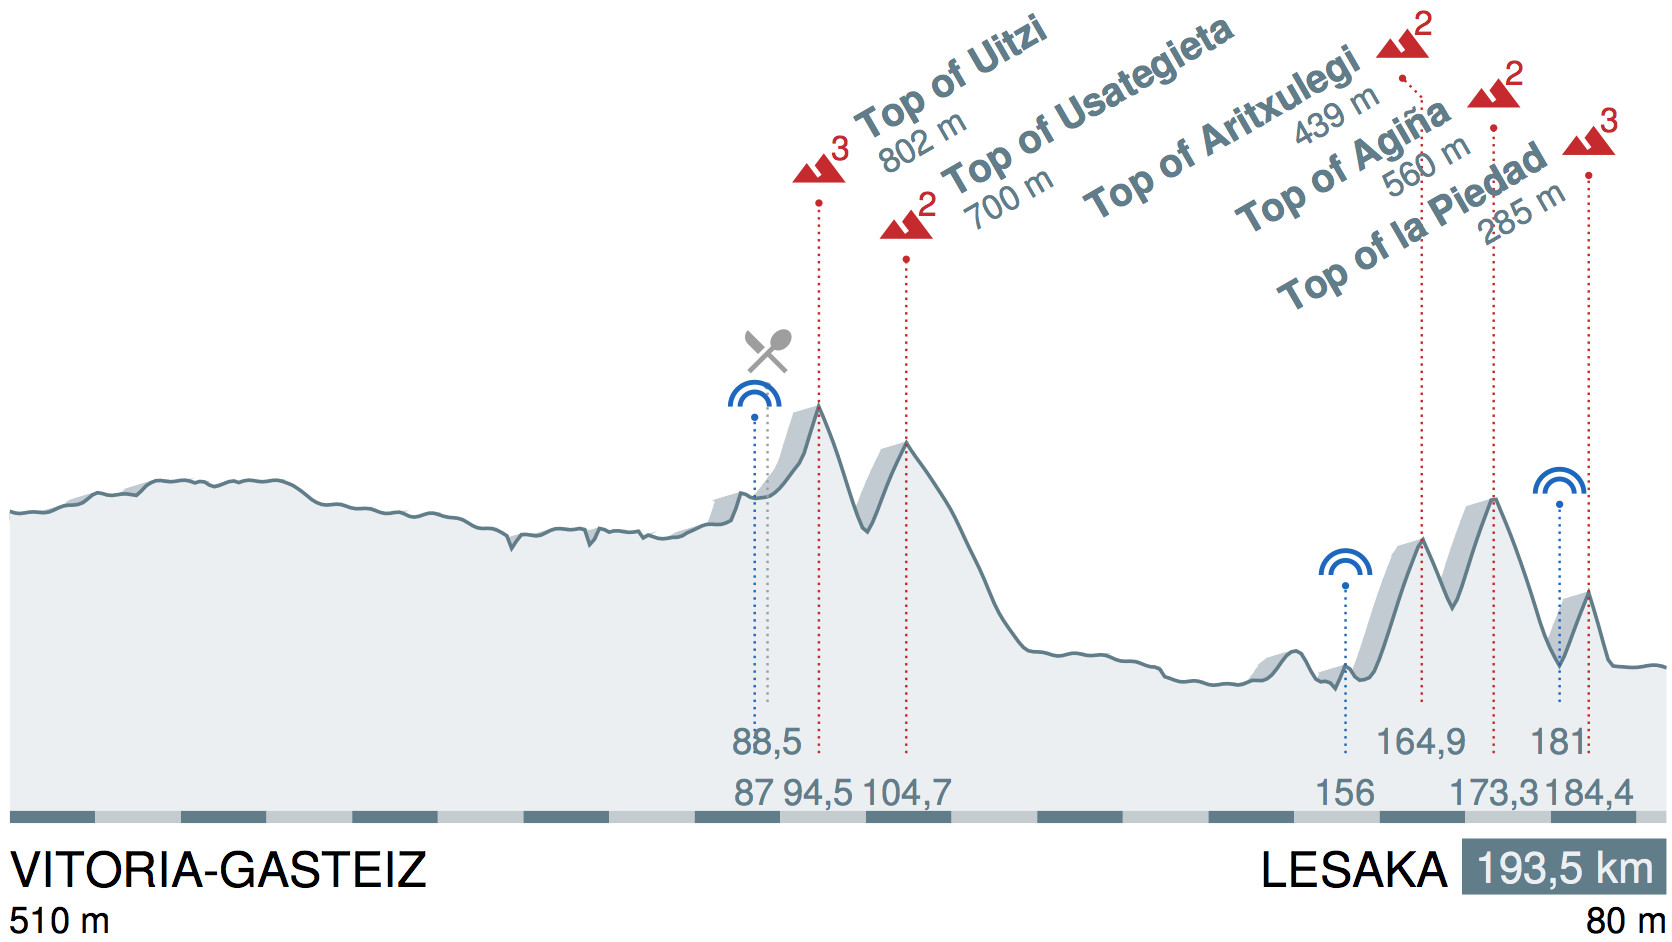 Tour du Pays basque 2016 etape 3 - profil